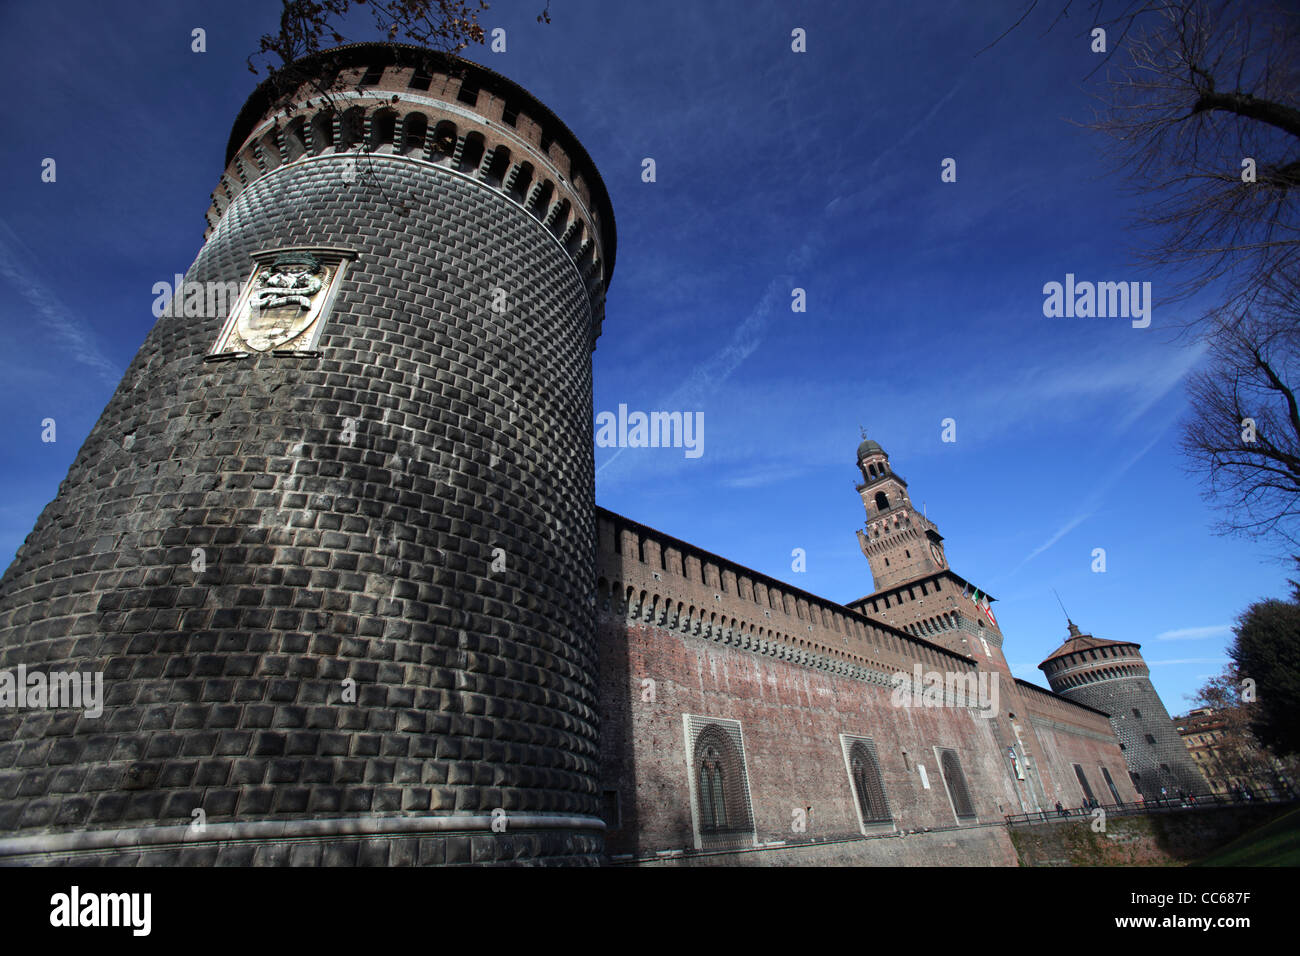 The Sforza Castle (Castello Sforzesco), Milan, Italy Stock Photo